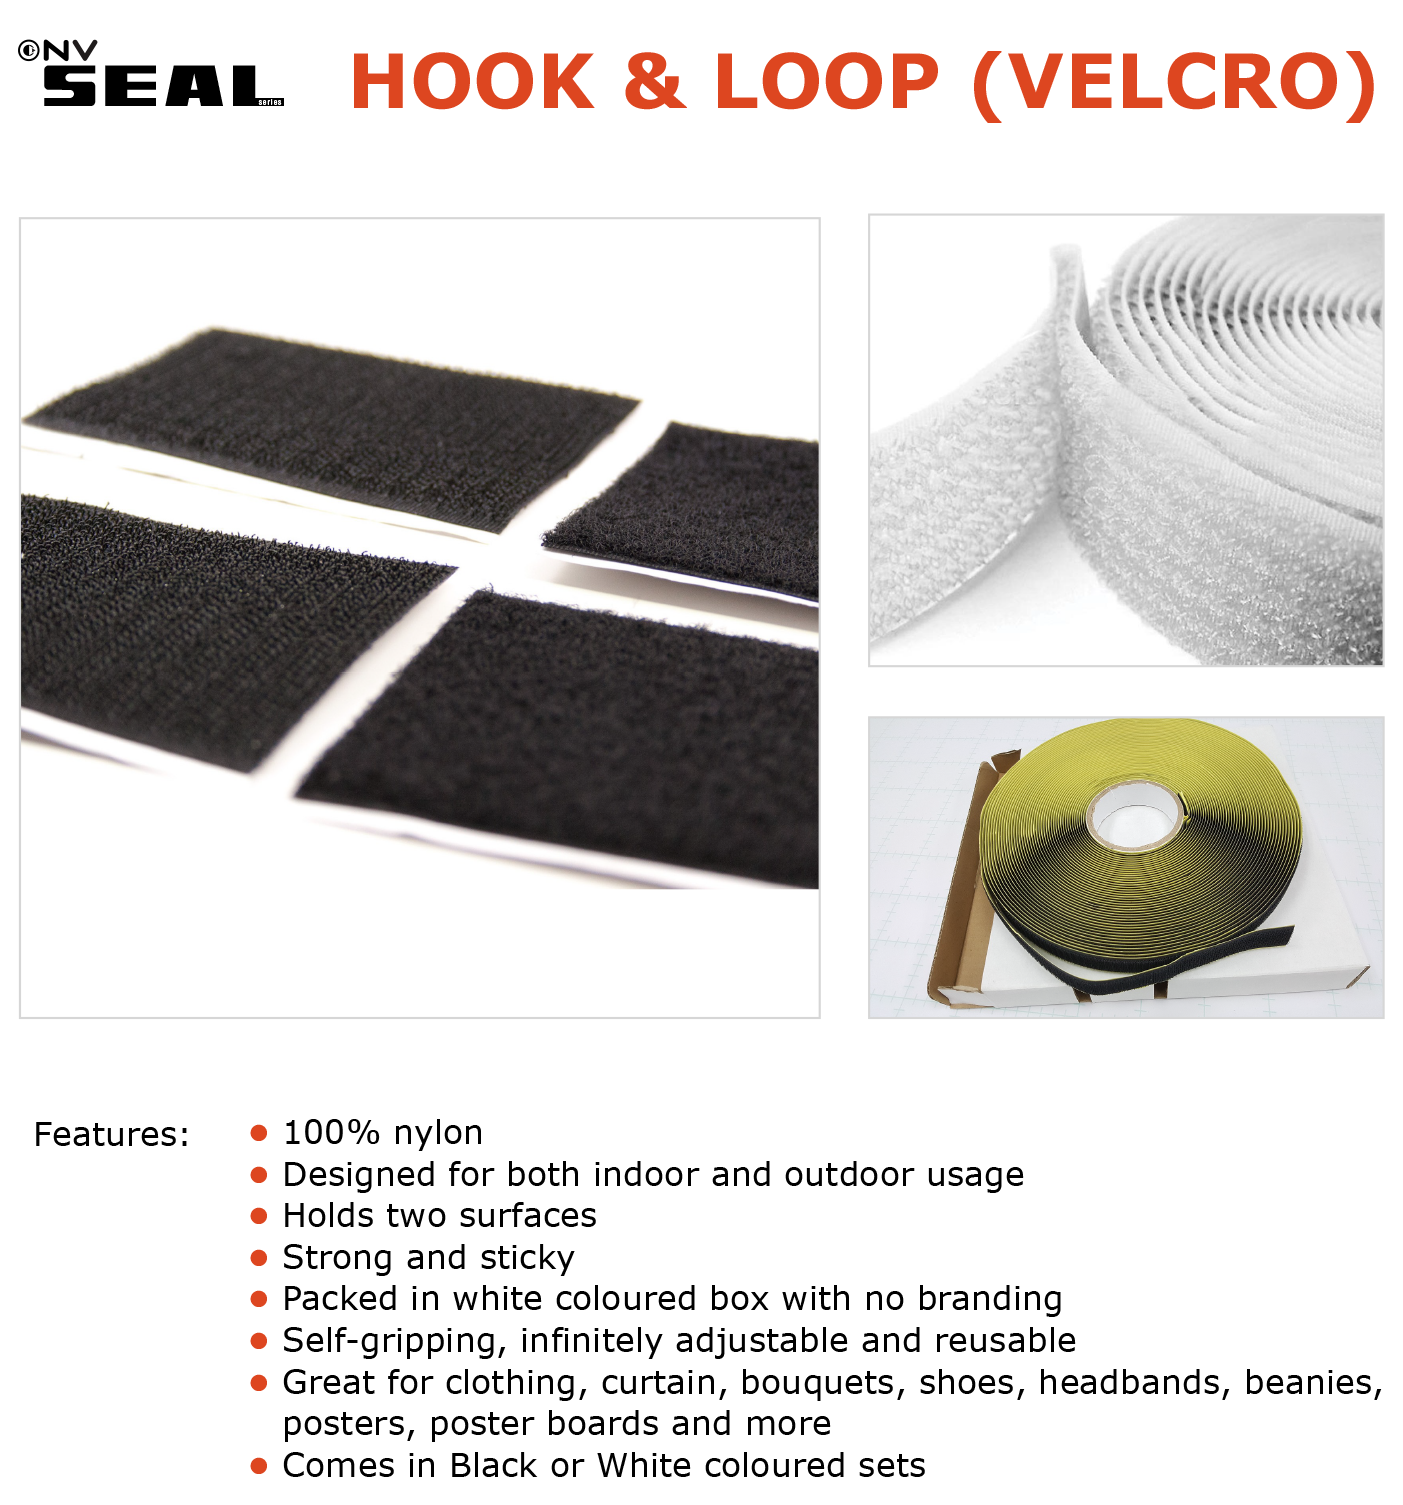 Velcro 25556 25mm x 1m Roll Black Heavy Duty Hook & Loop Fastener Tape